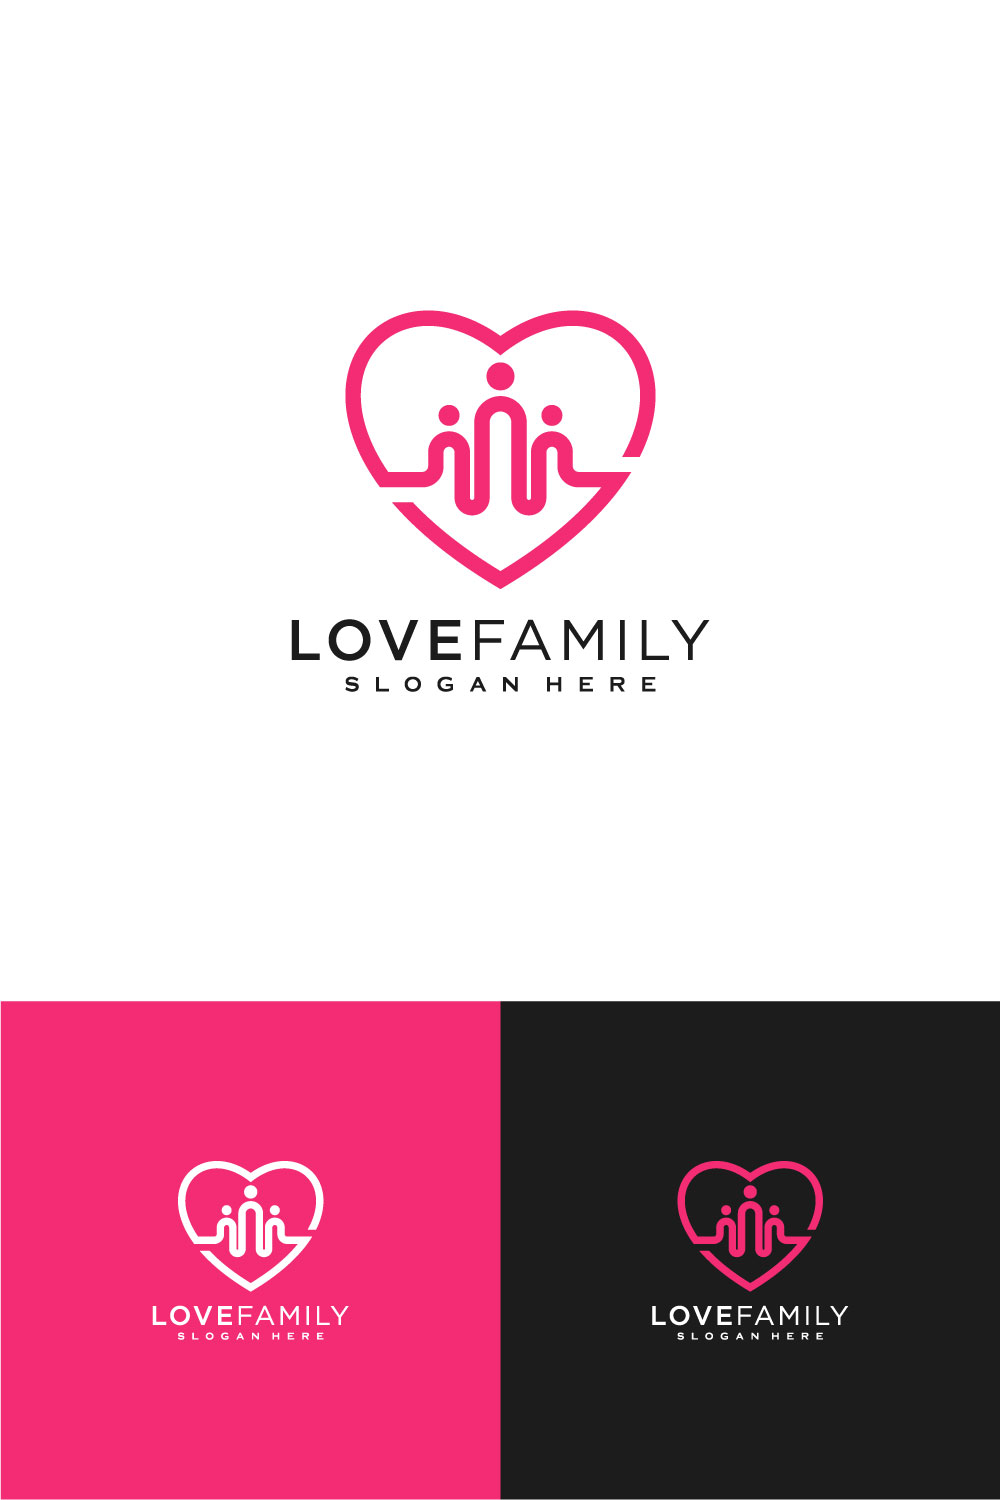 Love Family Logo Vector Design Line Style pinterest.